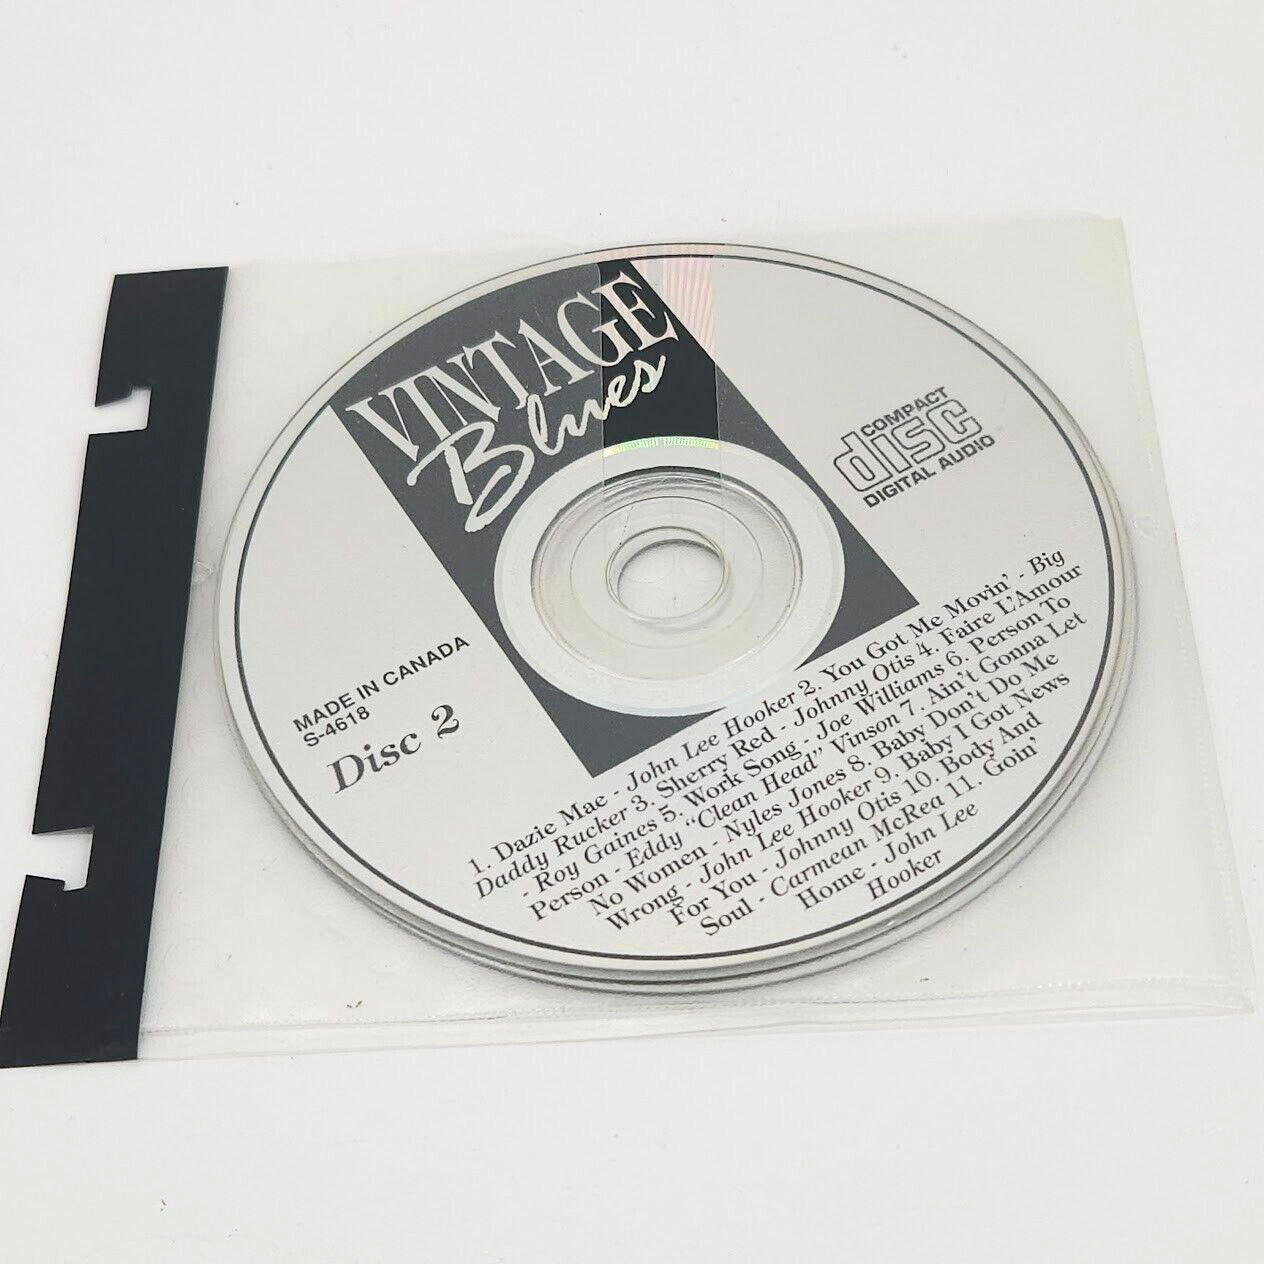 Vintage Blues Stevie Wonder 2 CD Tape Digital Audio Disc Various Artist 2 S-4618